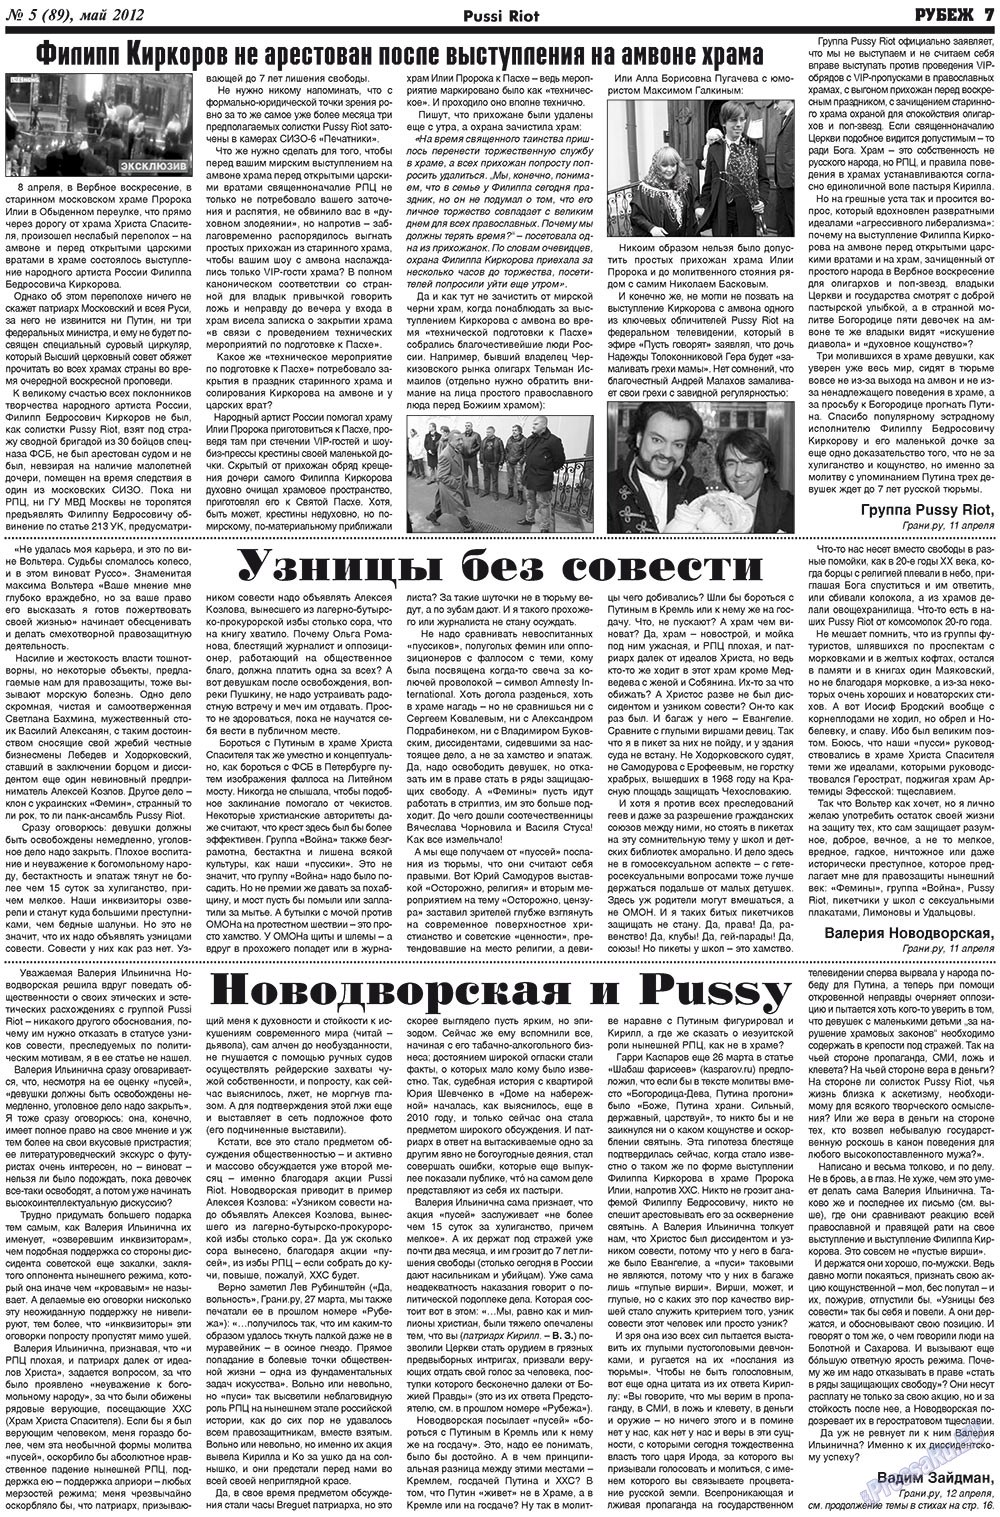 Рубеж (газета). 2012 год, номер 5, стр. 7